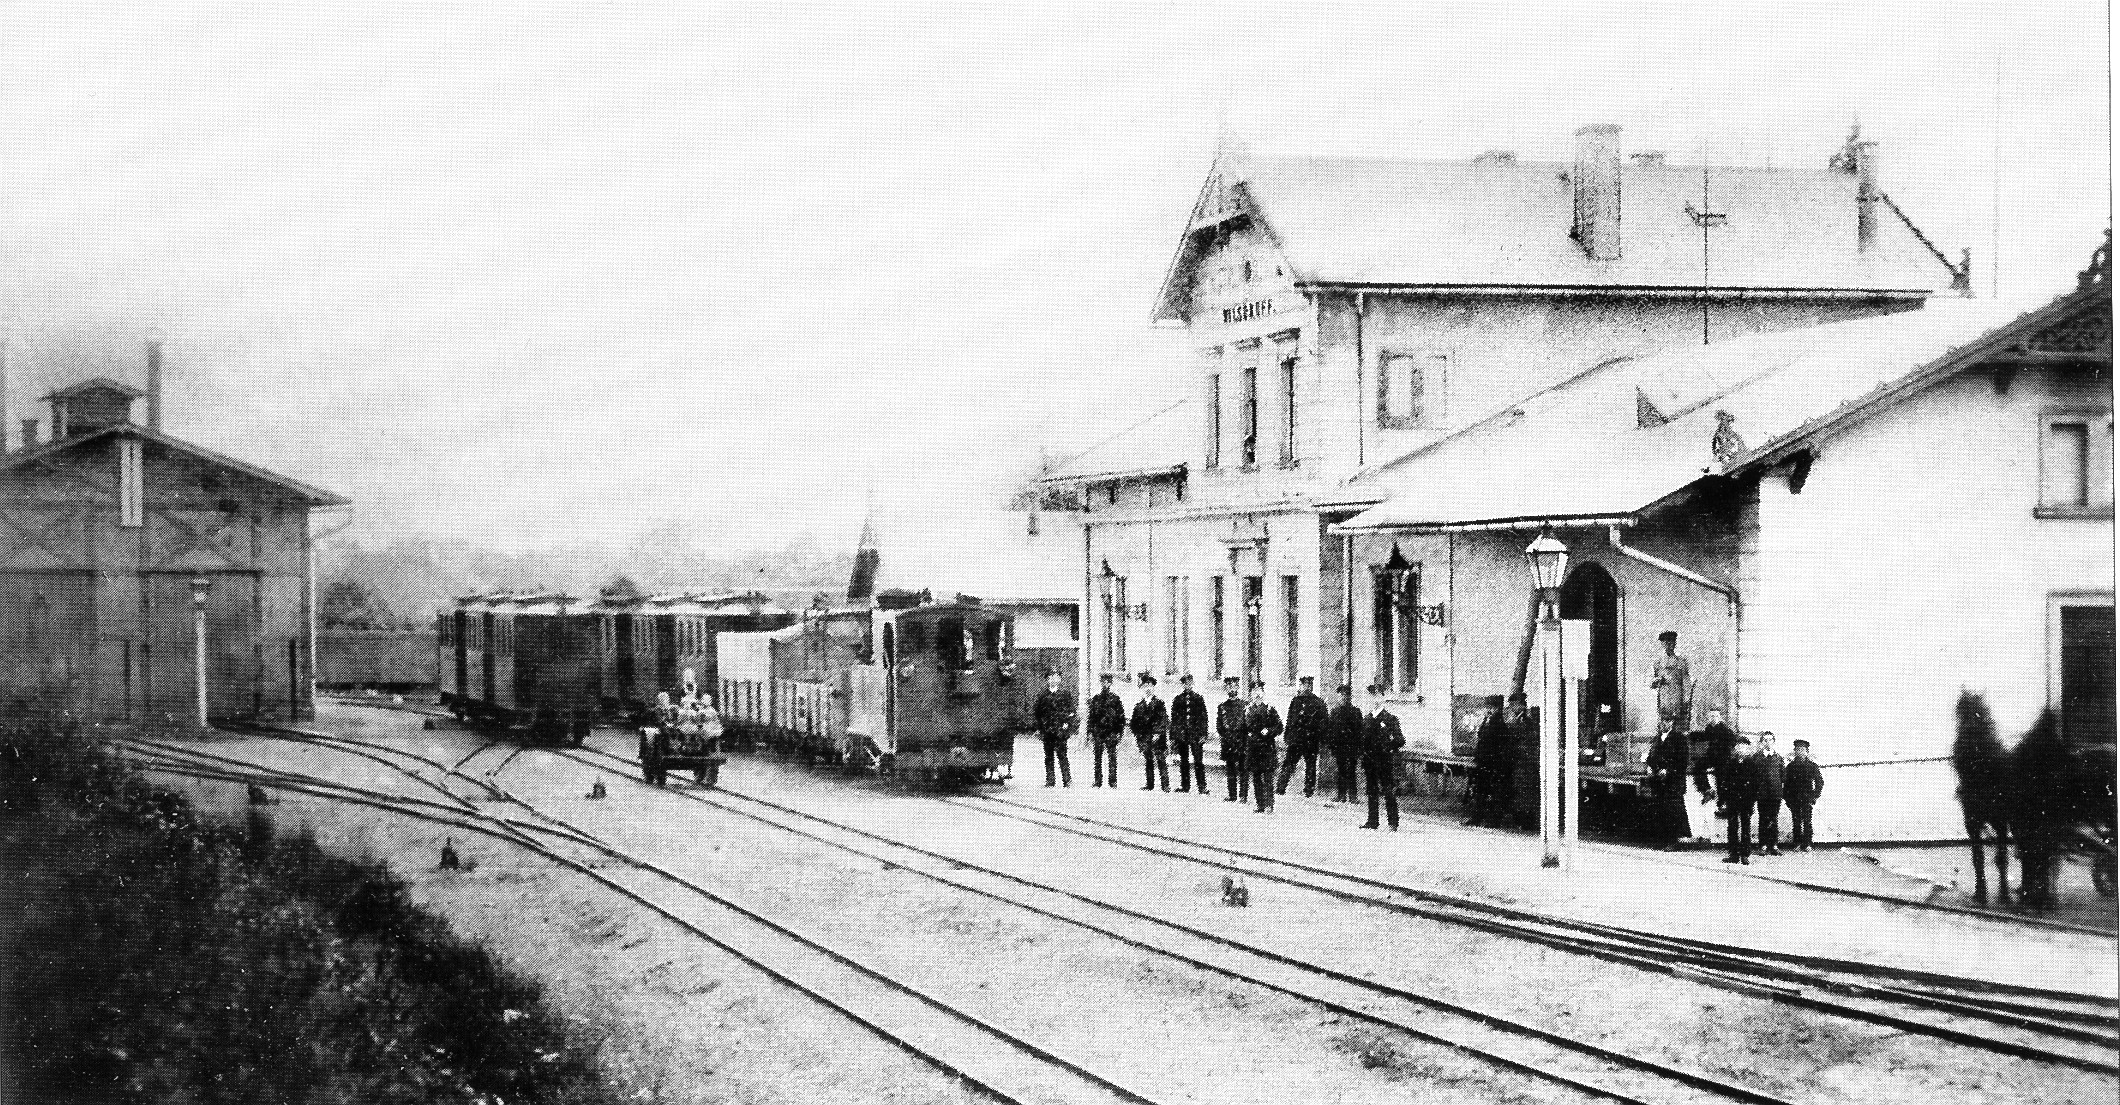 Bahnhof Wilsdruff ca. 1886, Sammlung P. Wunderwald